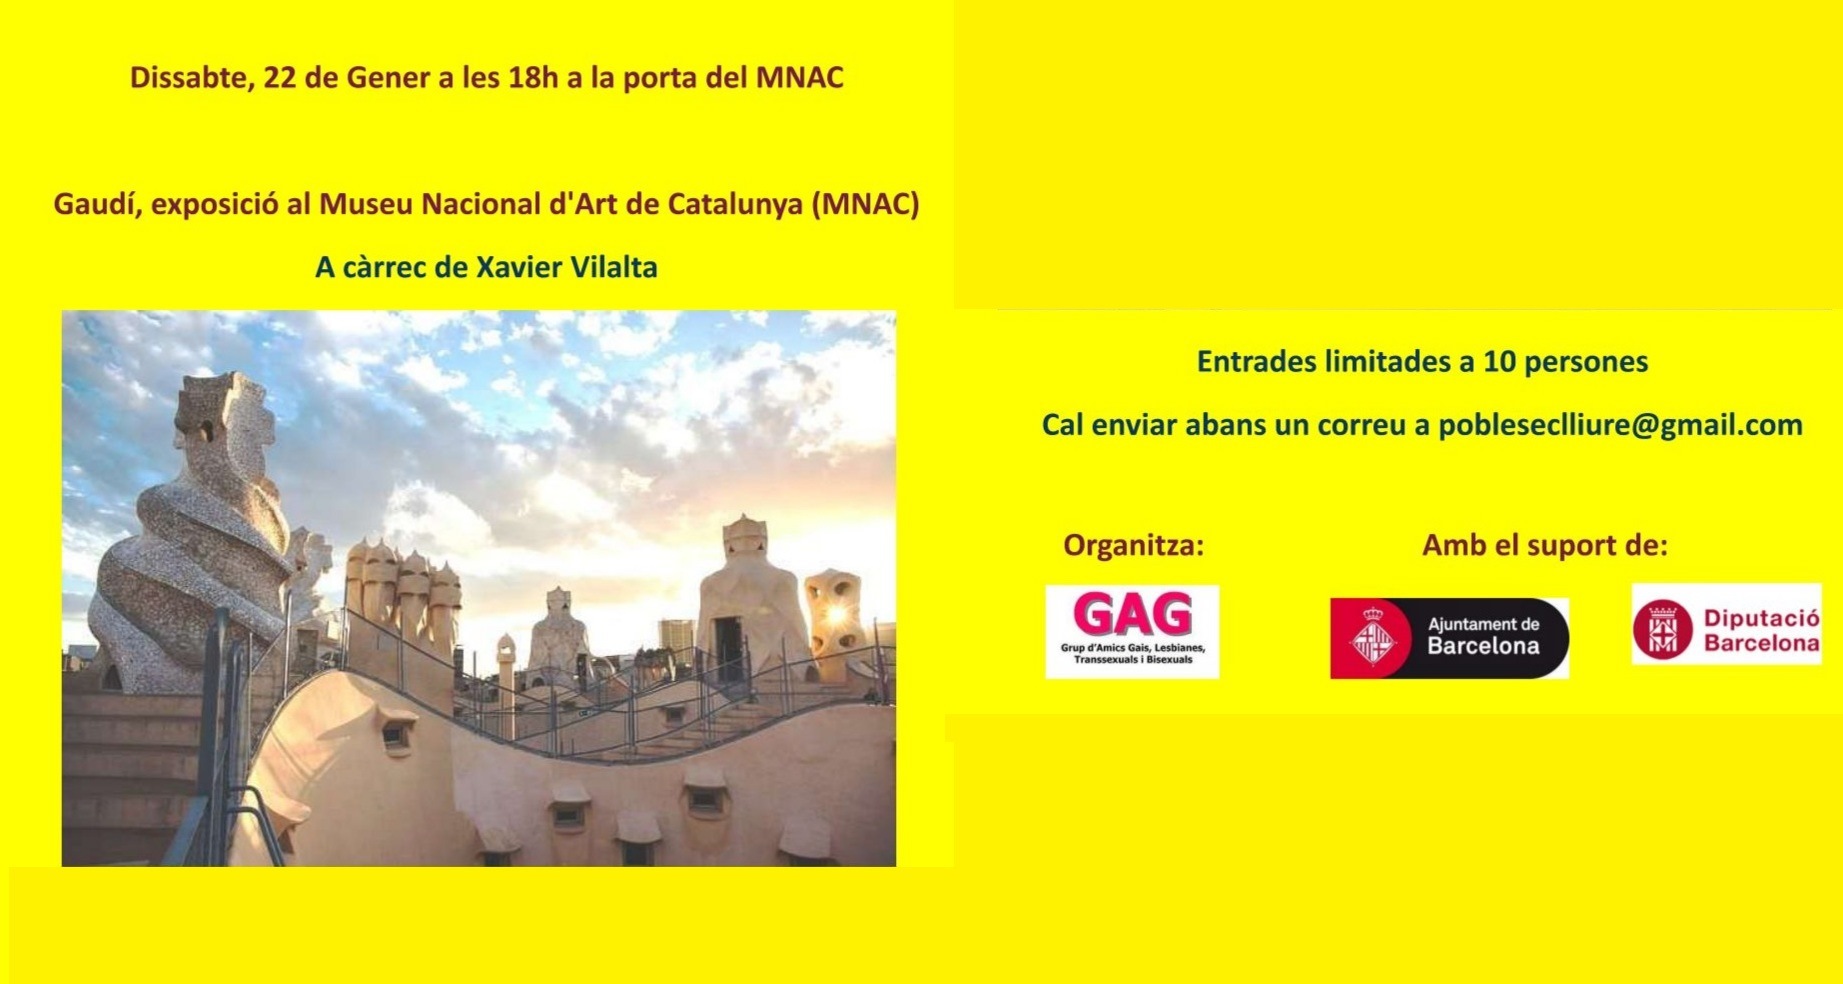 Dissabte, 22 de gener a les 18h: Visita a l’exposició “Gaudí” al MNAC